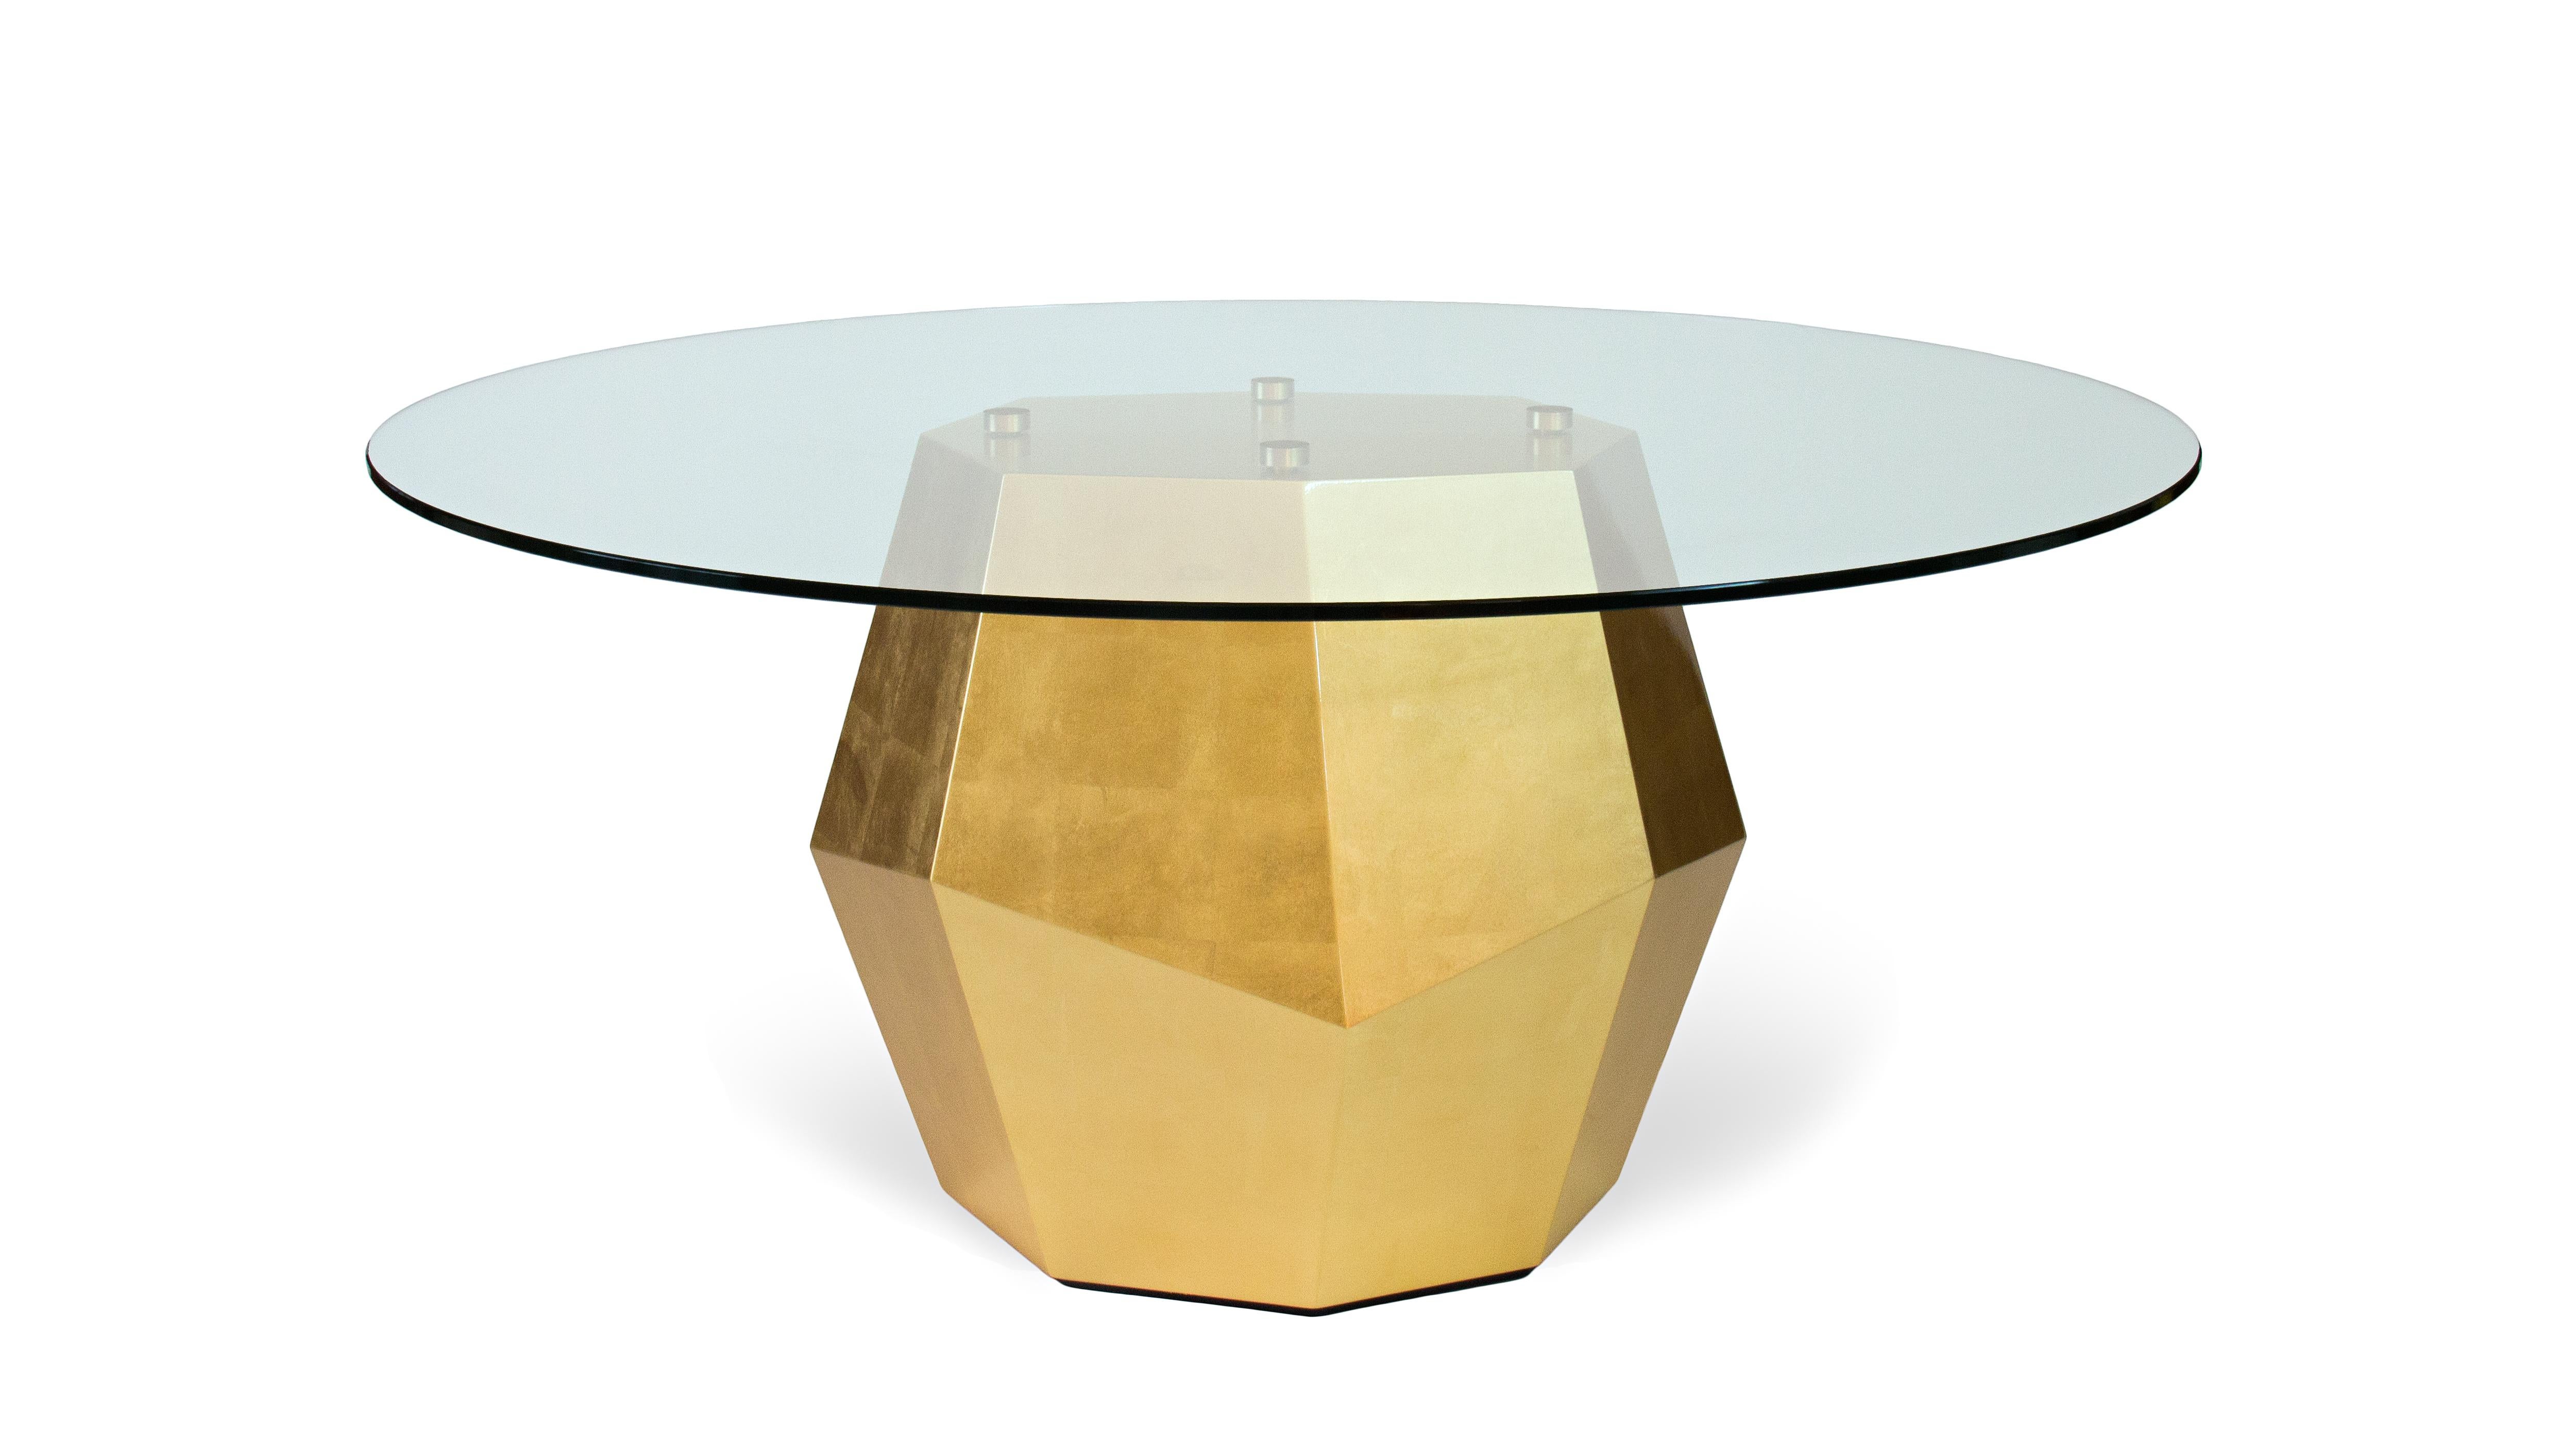 Table Rock à feuilles d'or par InsidherLand
Dimensions : D 160 x L 160 x H 74 cm.
MATERIAL : Verre, bois, feuille d'or.
130 kg.

Le volume robuste de la table de salle à manger Rock, entièrement finie en placage de noyer sur un élégant travail à